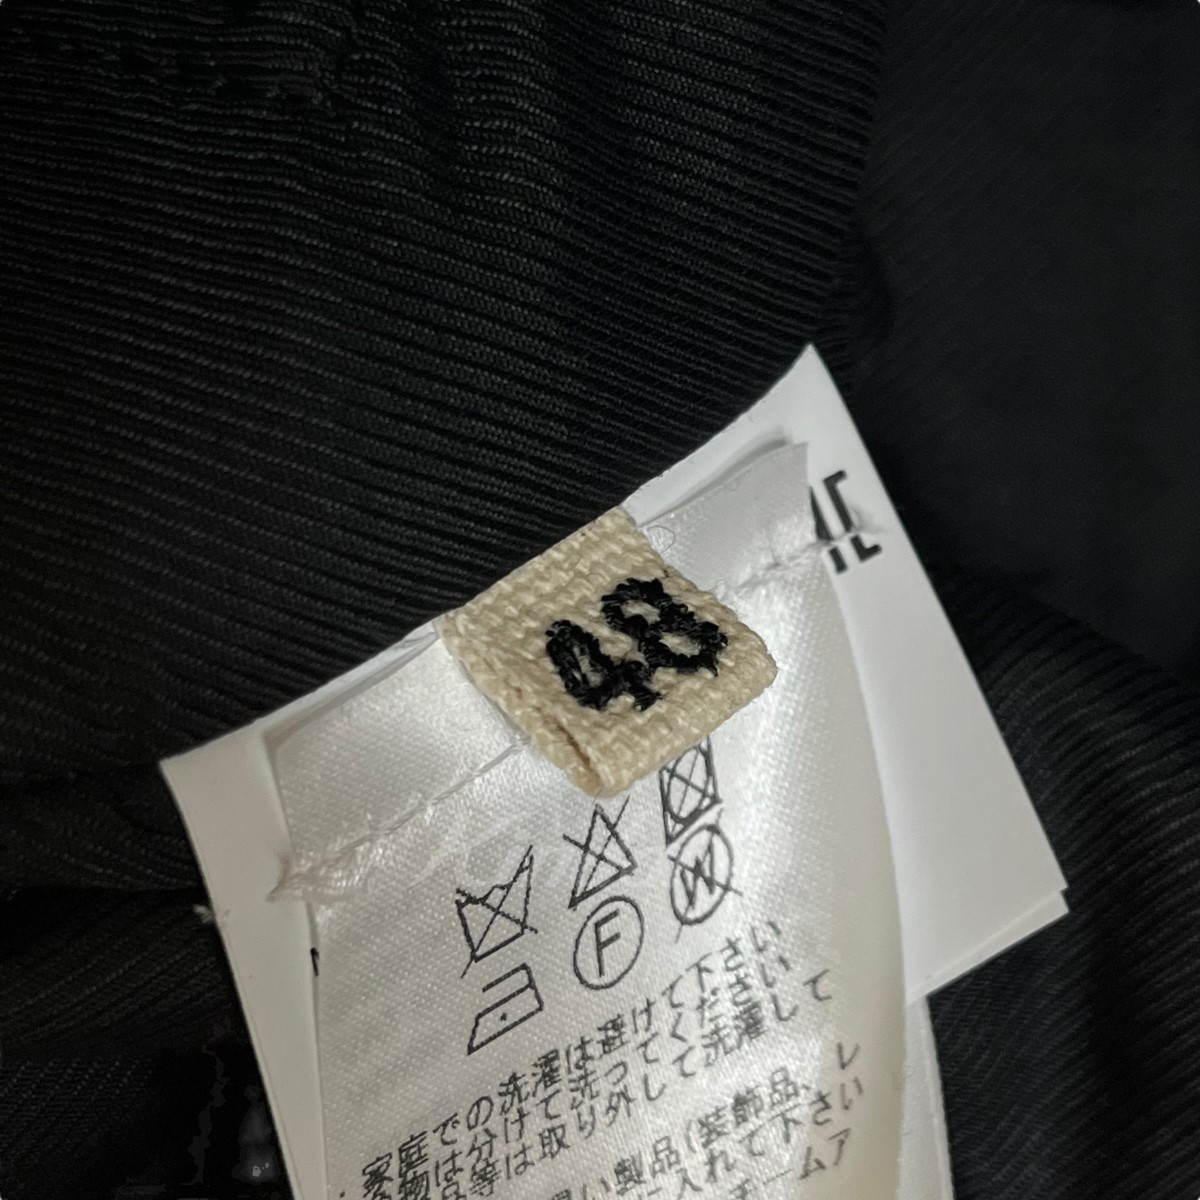 楽天市場】【中古】MARNI Embroidered Shirt Jacket ブラック サイズ